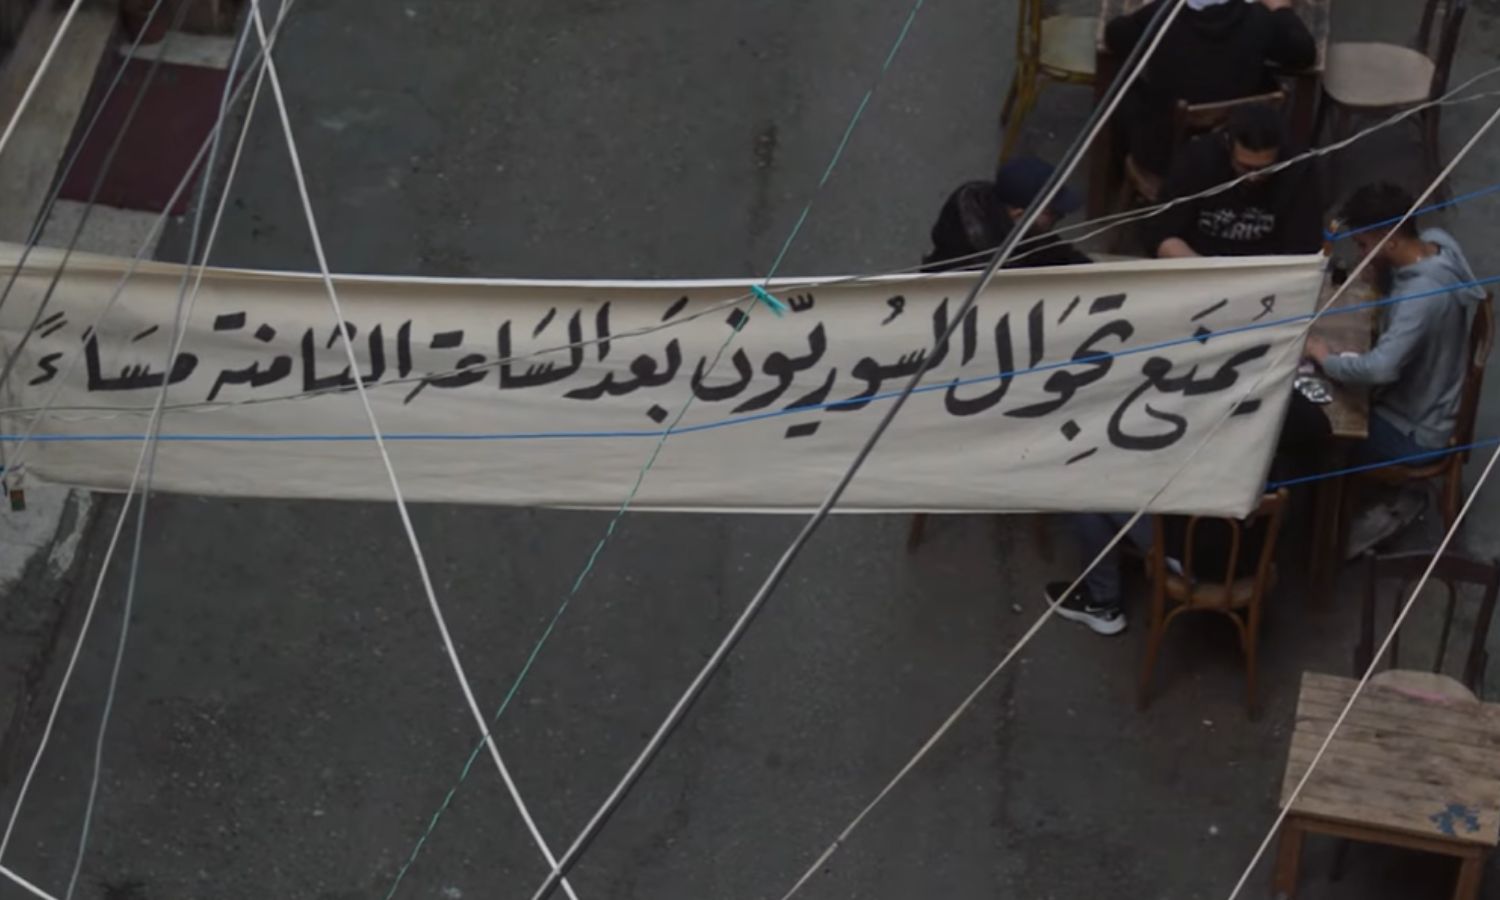 لافتة منع تجول للسوريين بعد الثامنة مساءً في مسلسل النار بالنار (لقطة شاشة)